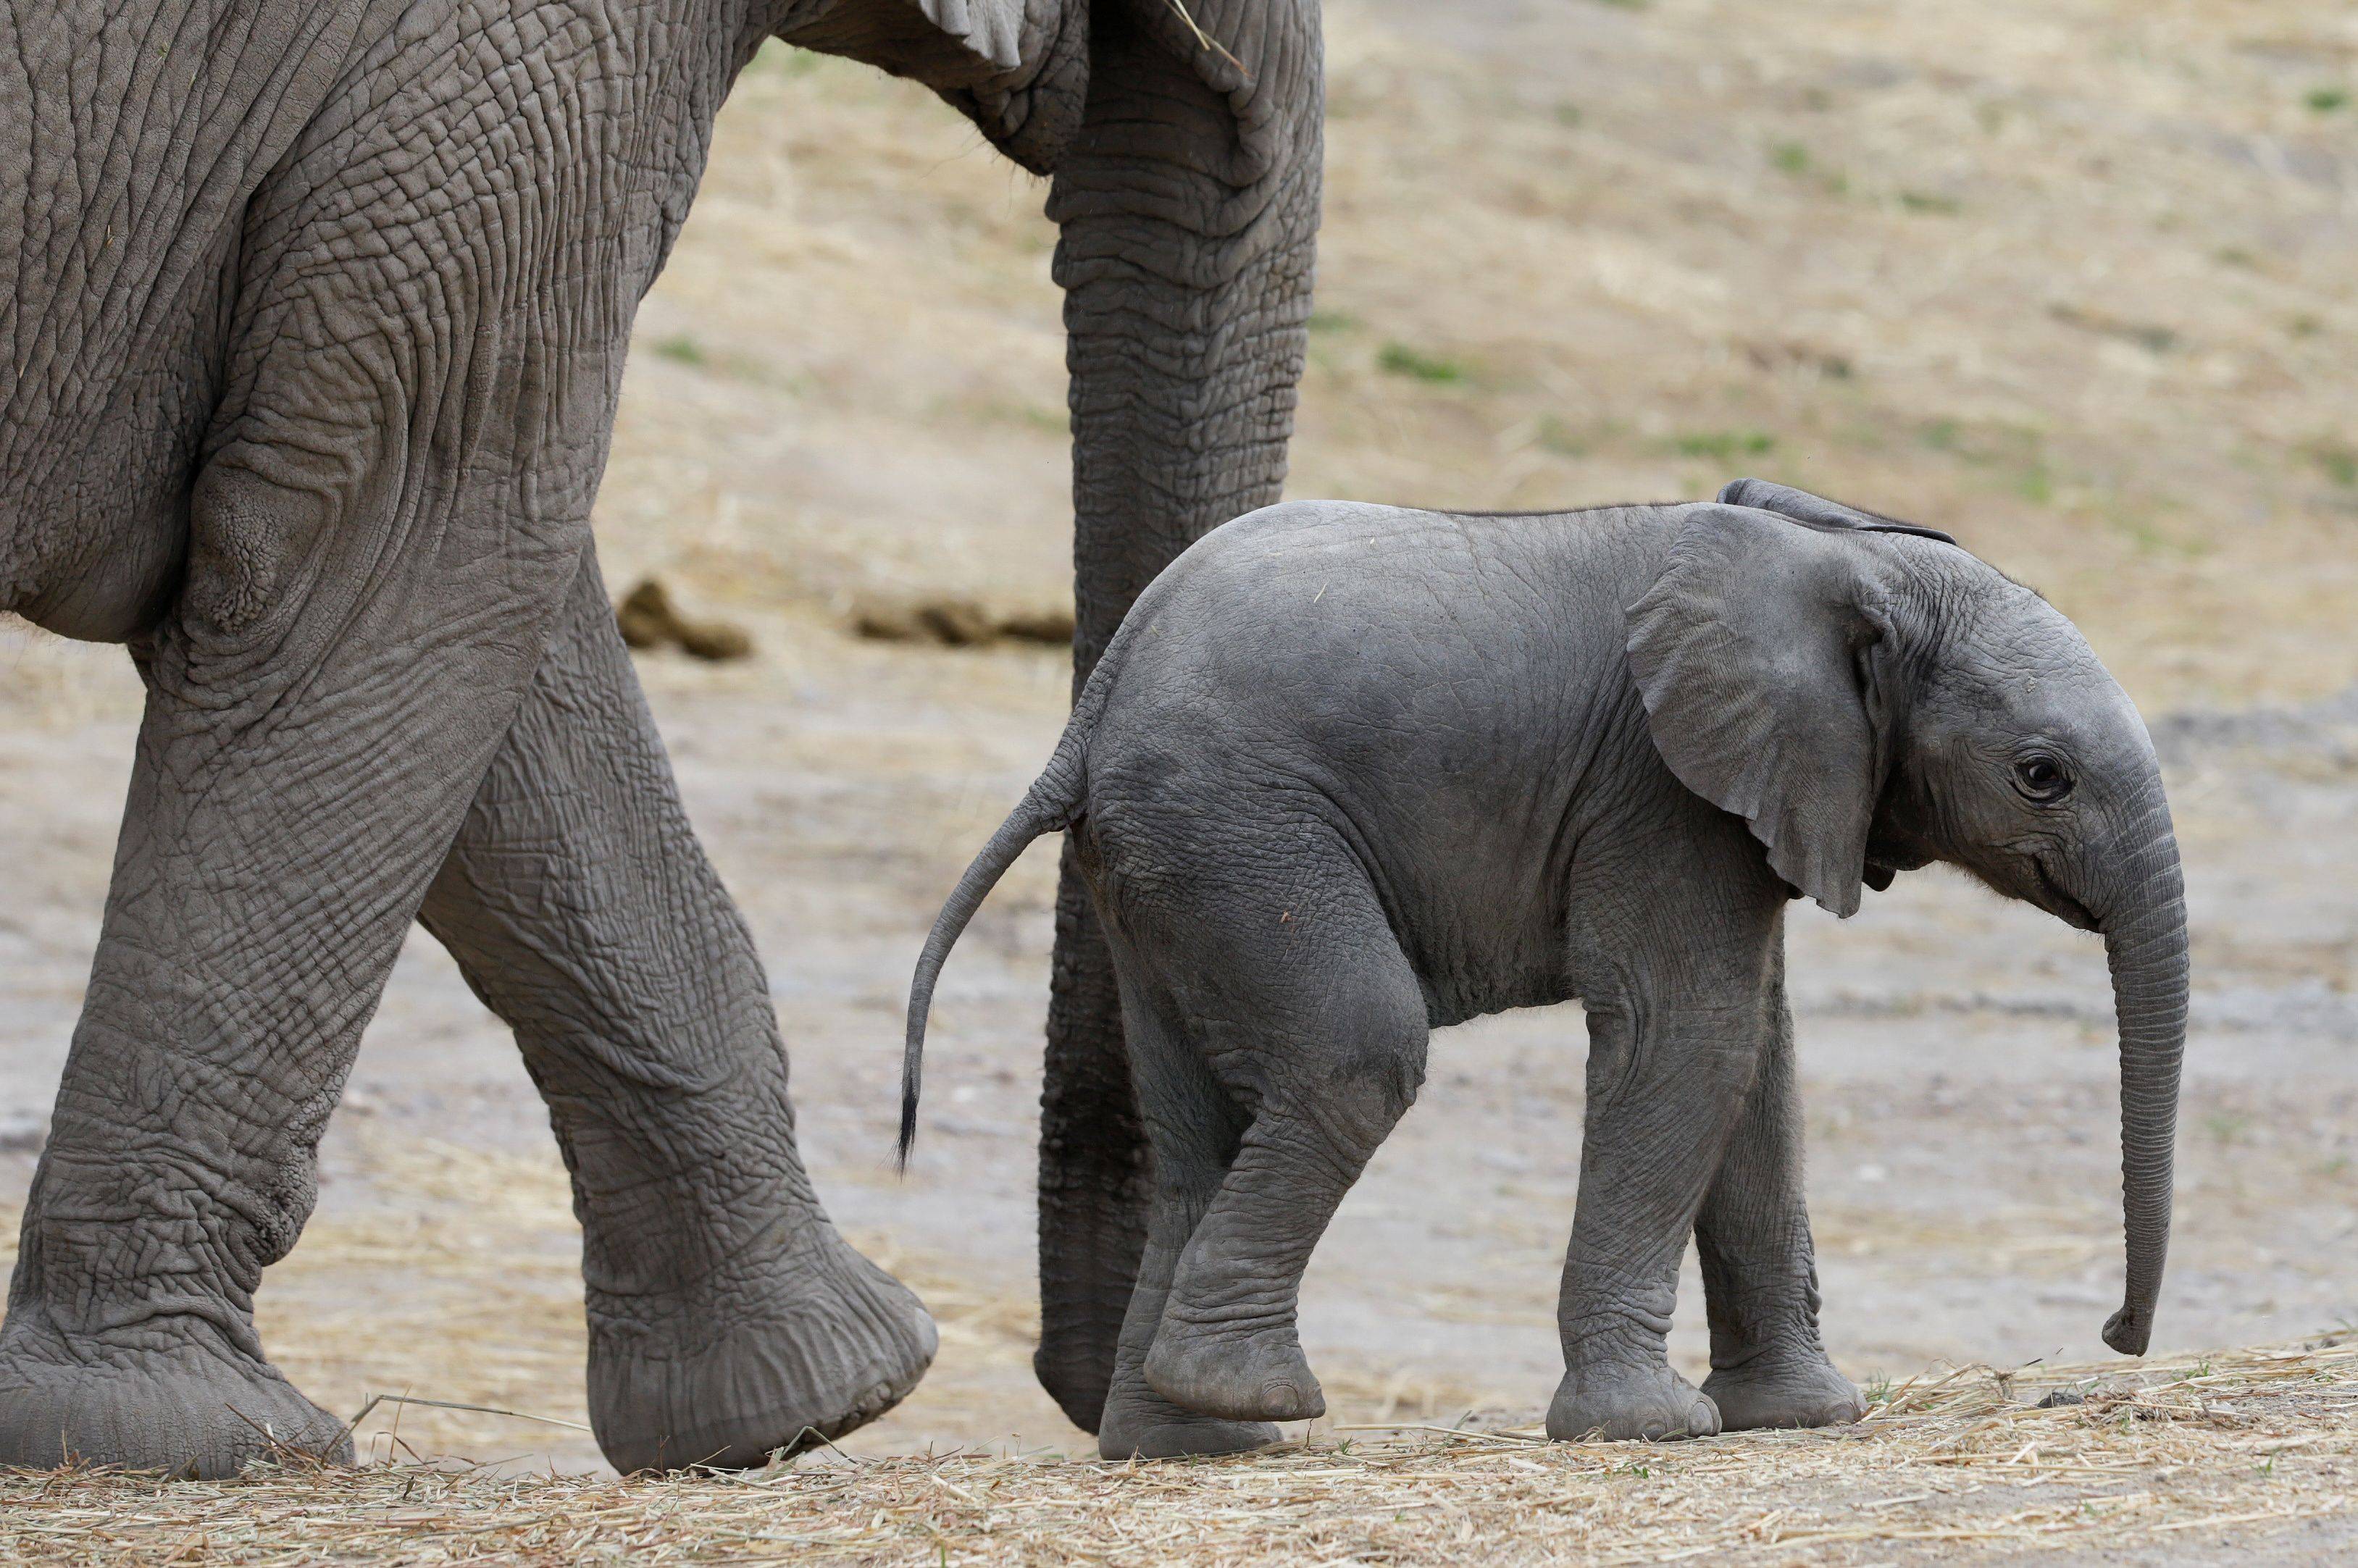 这是8月12日在墨西哥巴尔塞基略的动物园里拍摄的大象宝宝.